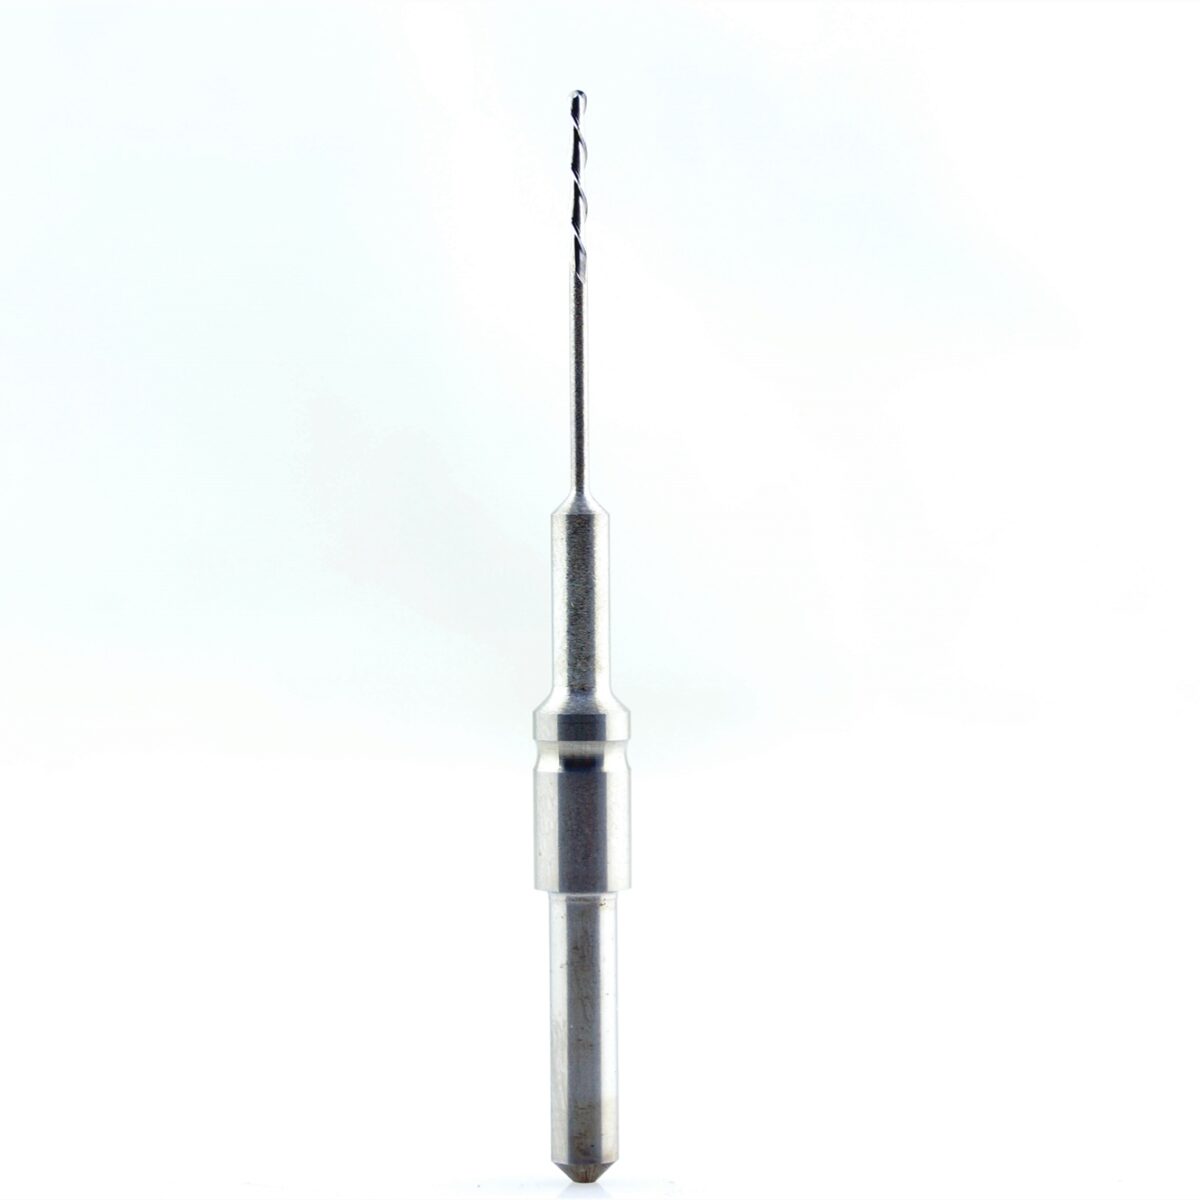 Cercon 1.0 dental milling tool